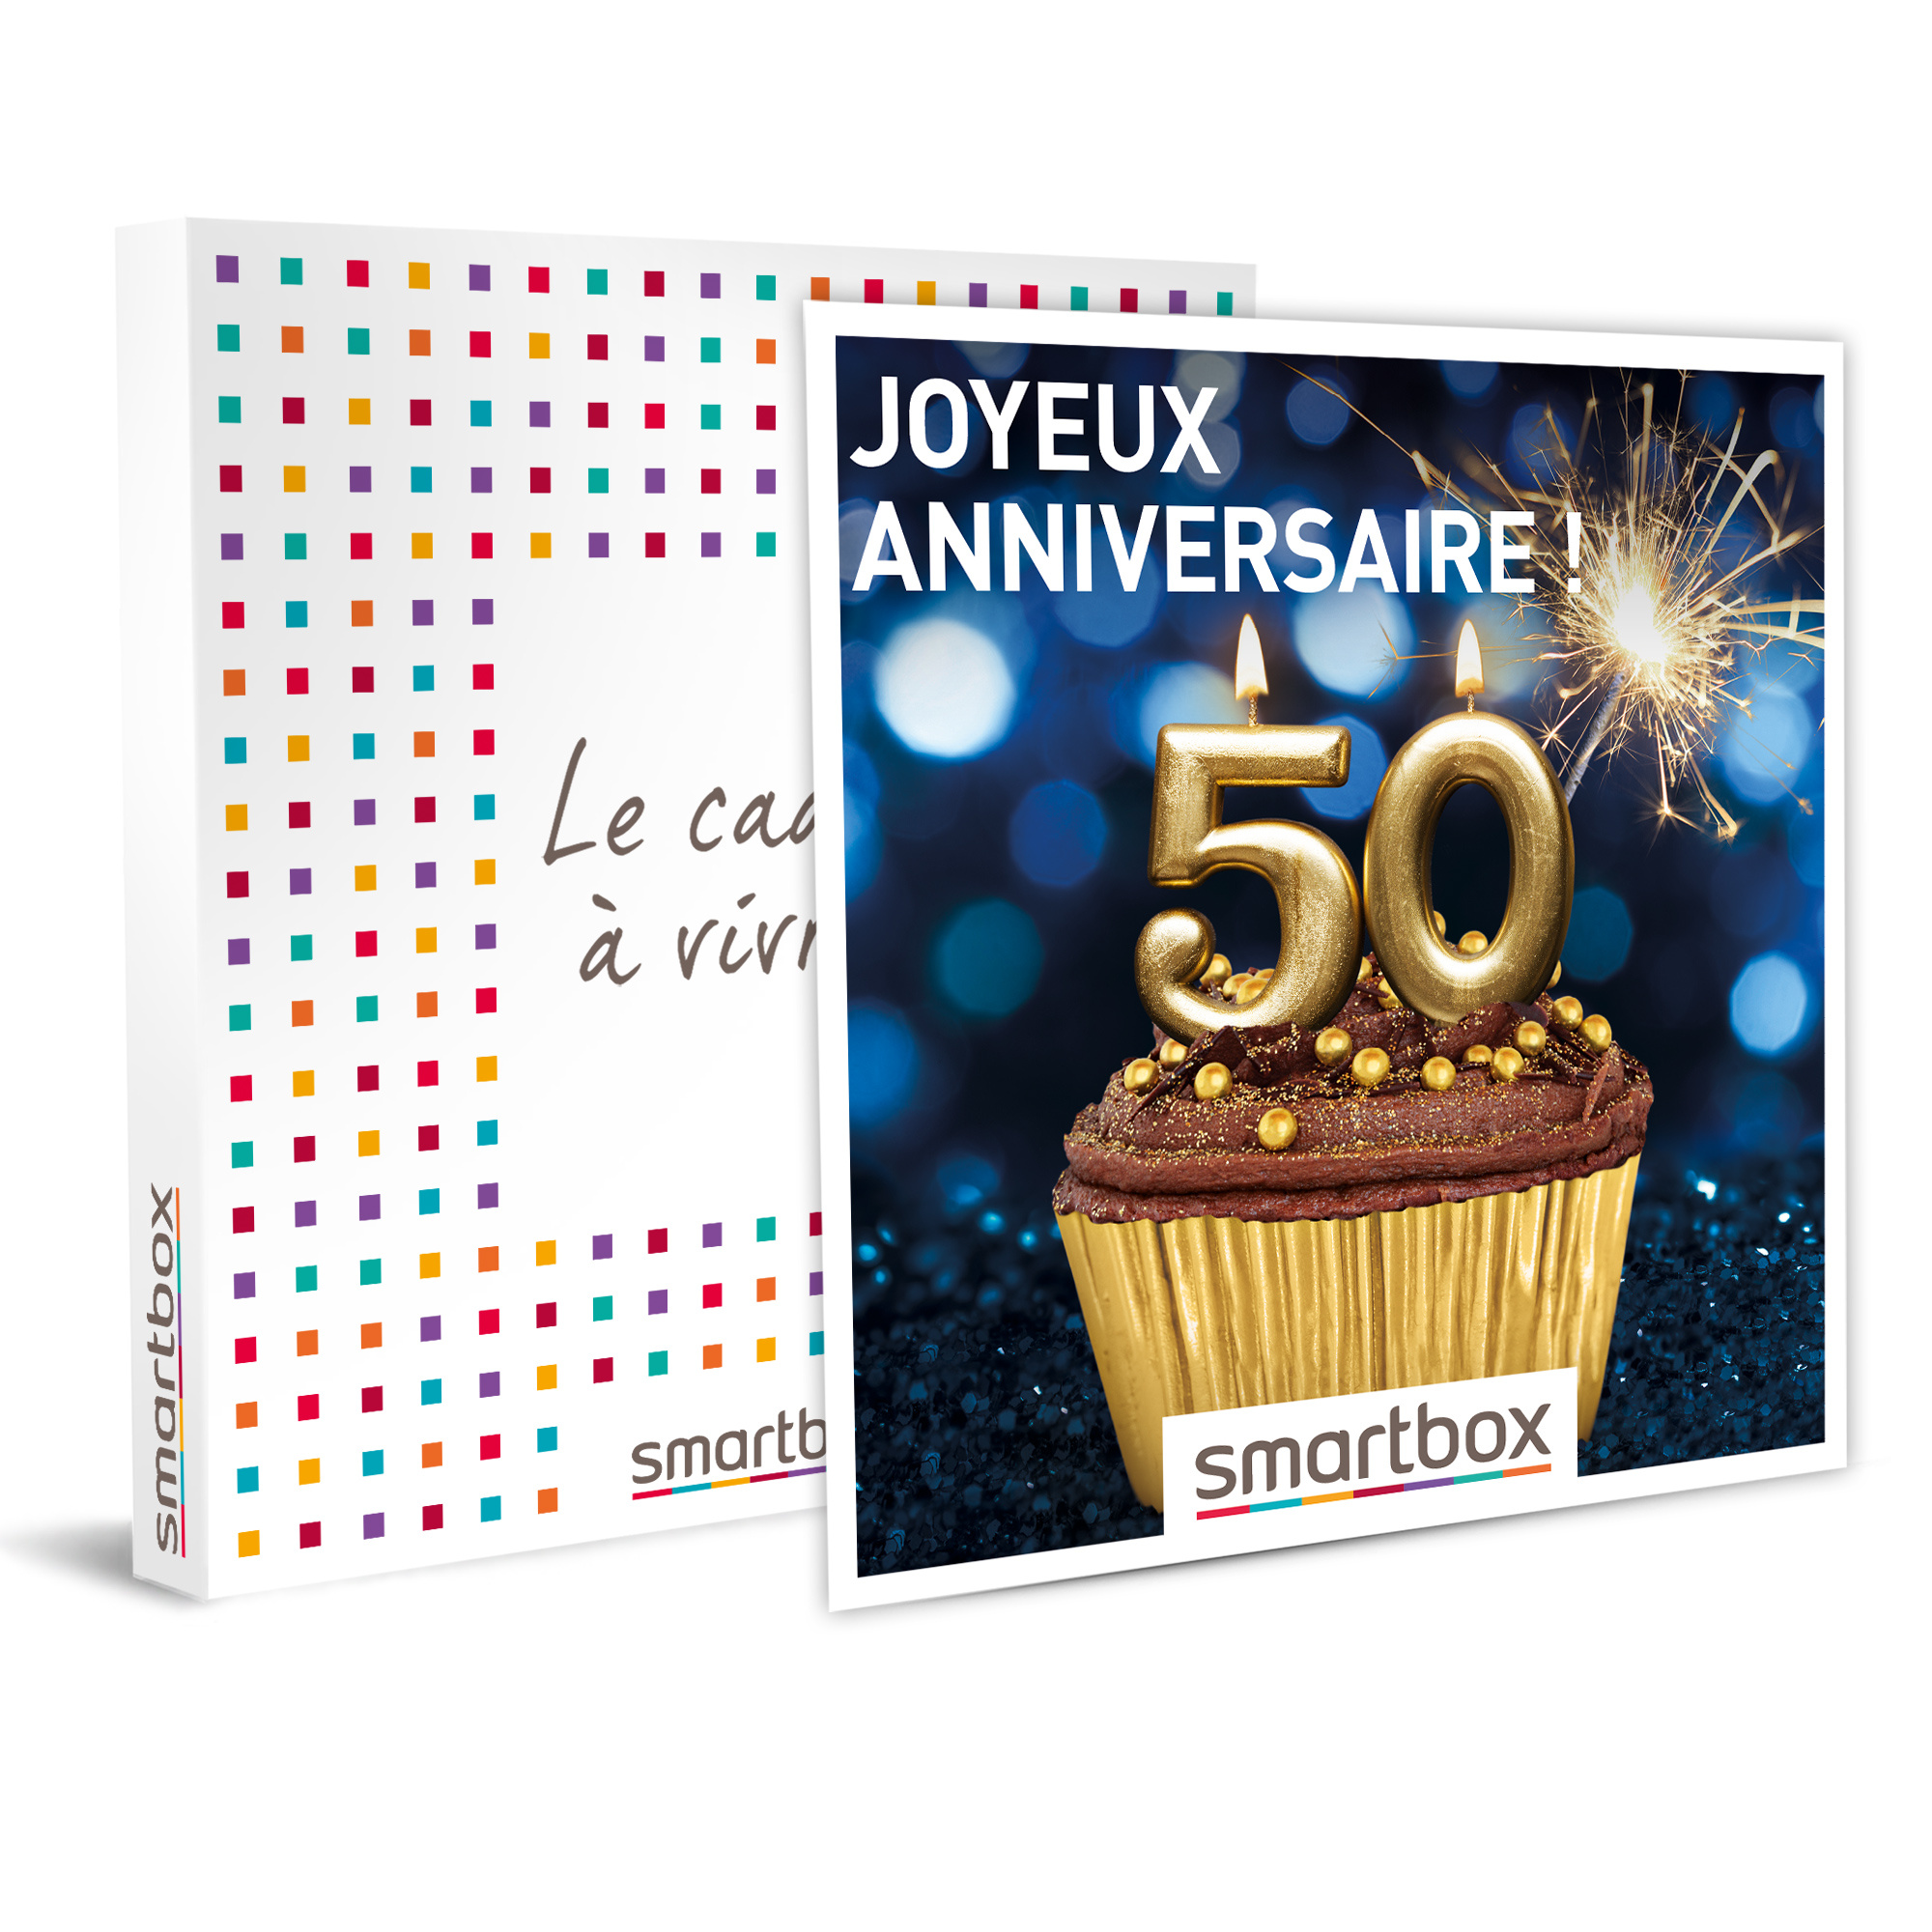 Smartbox Coffret Cadeau Joyeux Anniversaire Pour Homme 50 Ans 3451 Escapades Repas Seances De Bien Etre Et Aventures Sportives Pas Cher A Prix Auchan